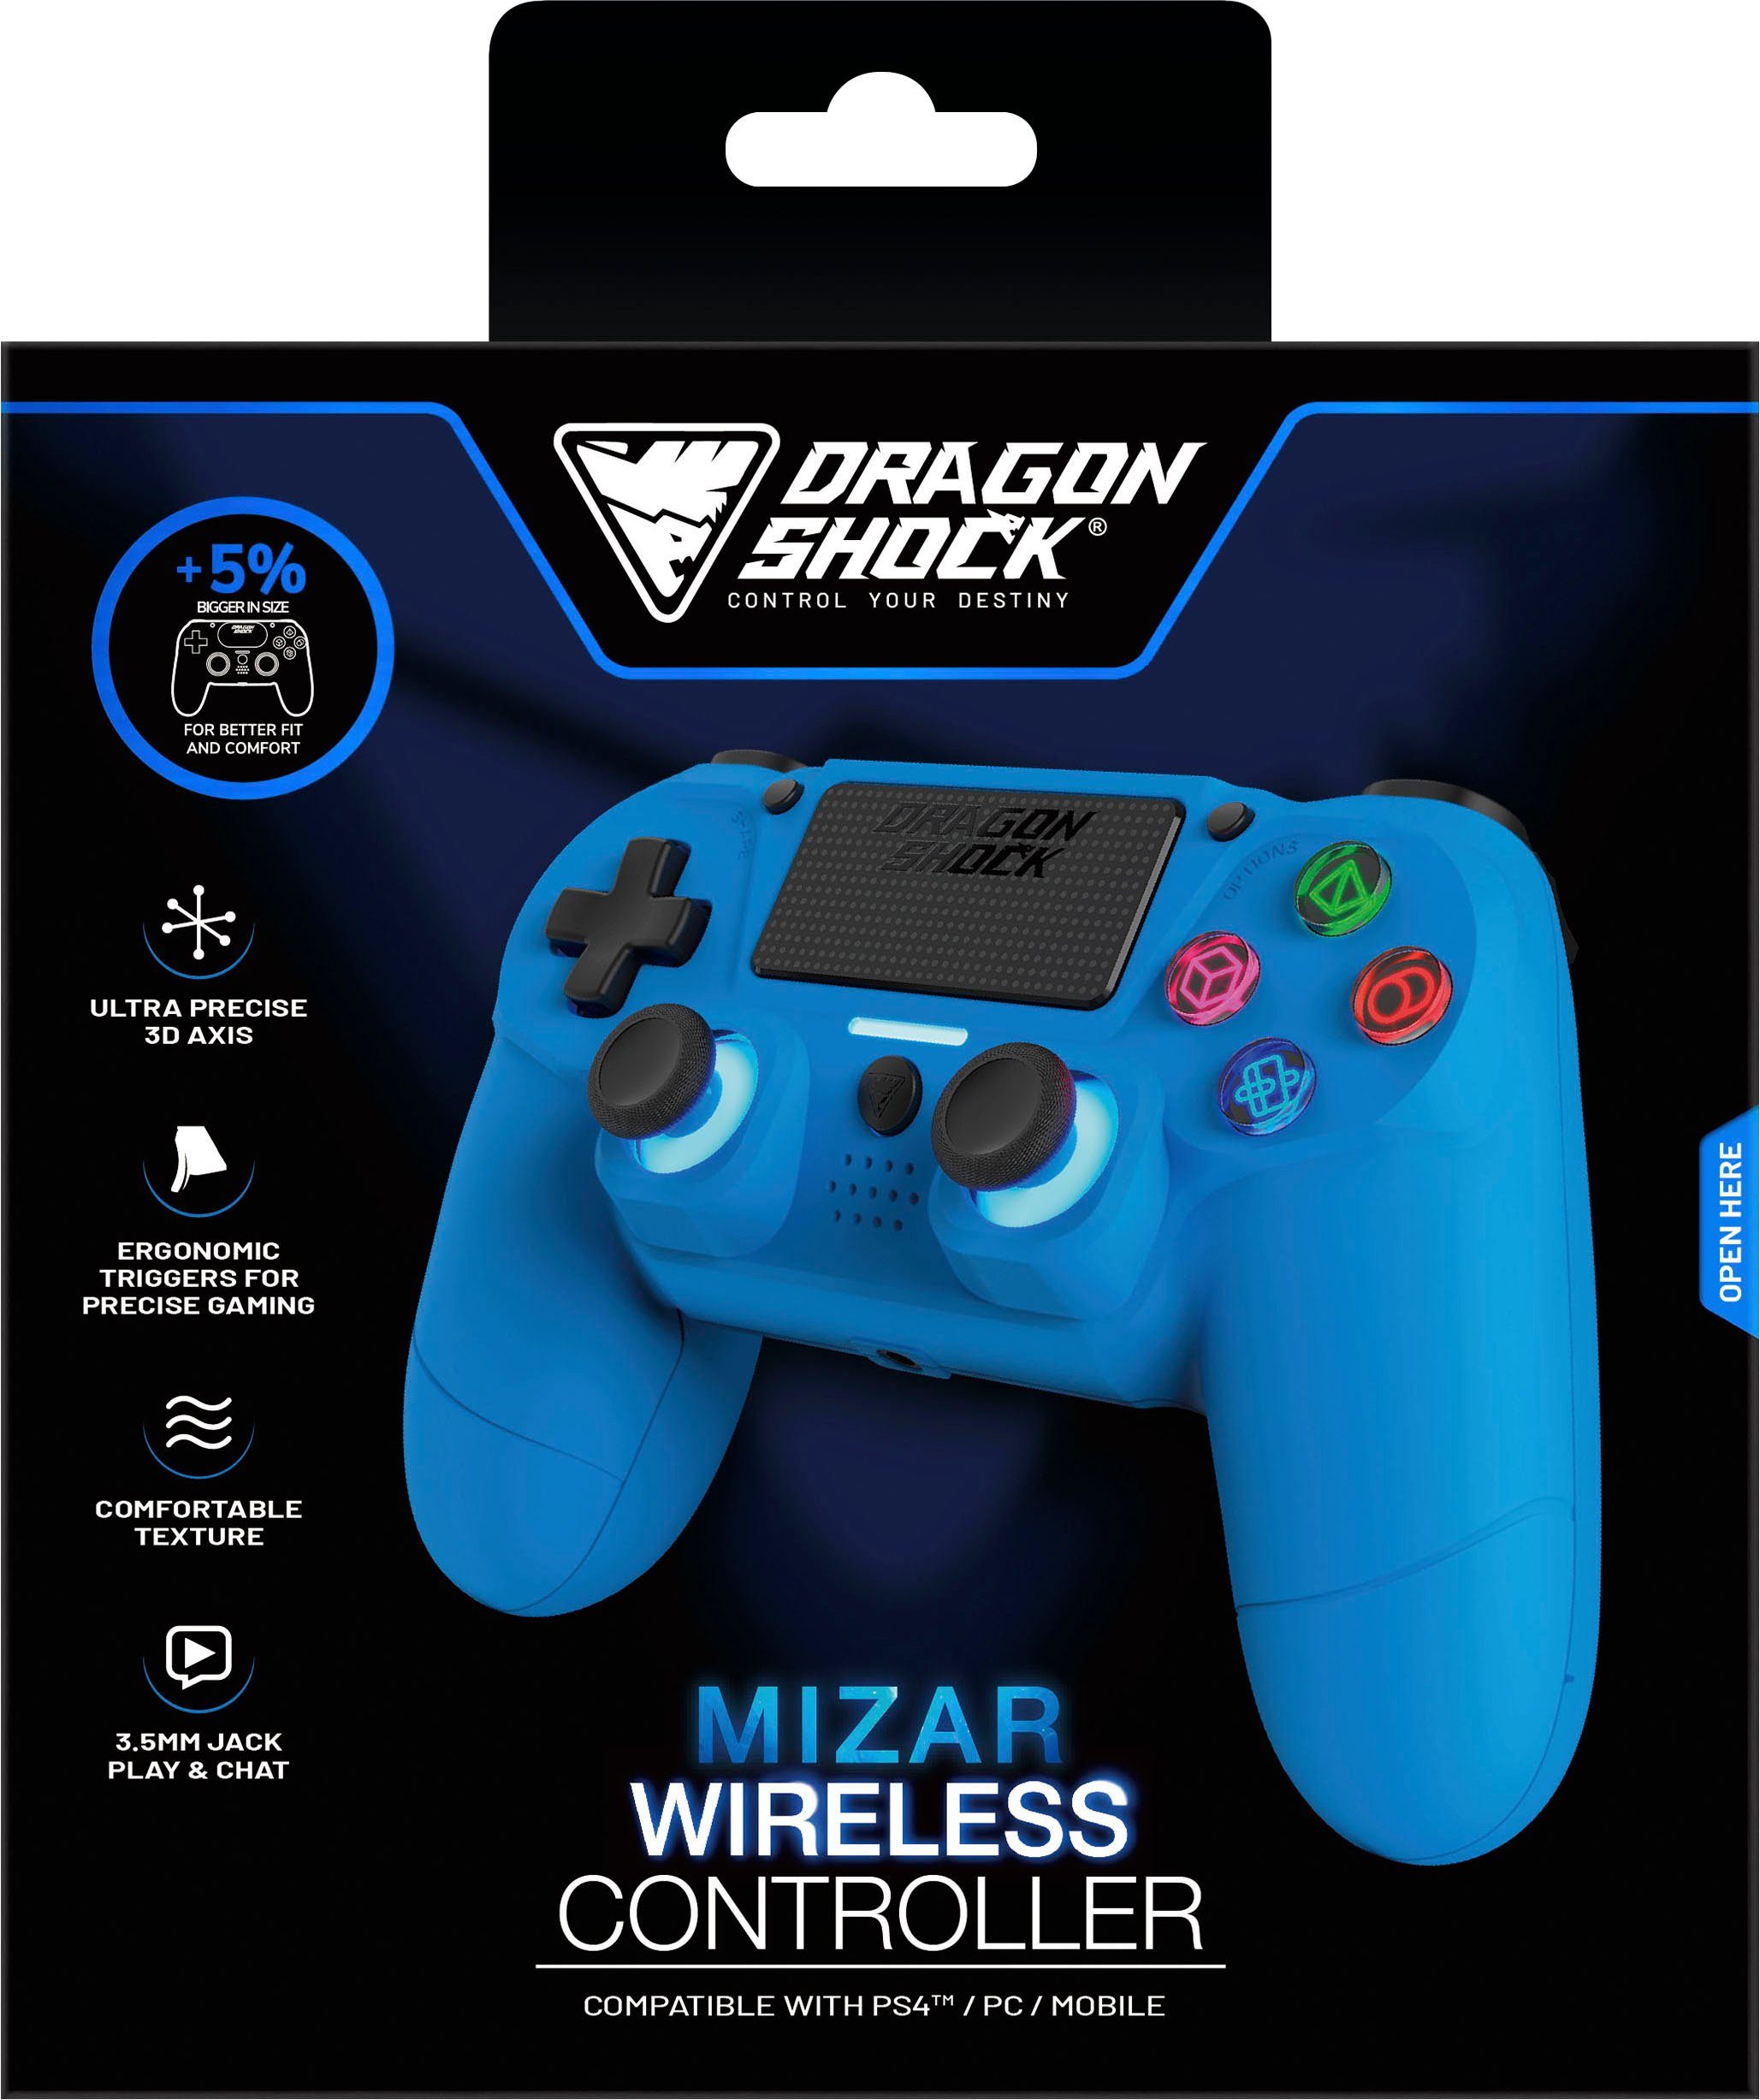 PS4 Wireless Mizar Controller DRAGONSHOCK blau für